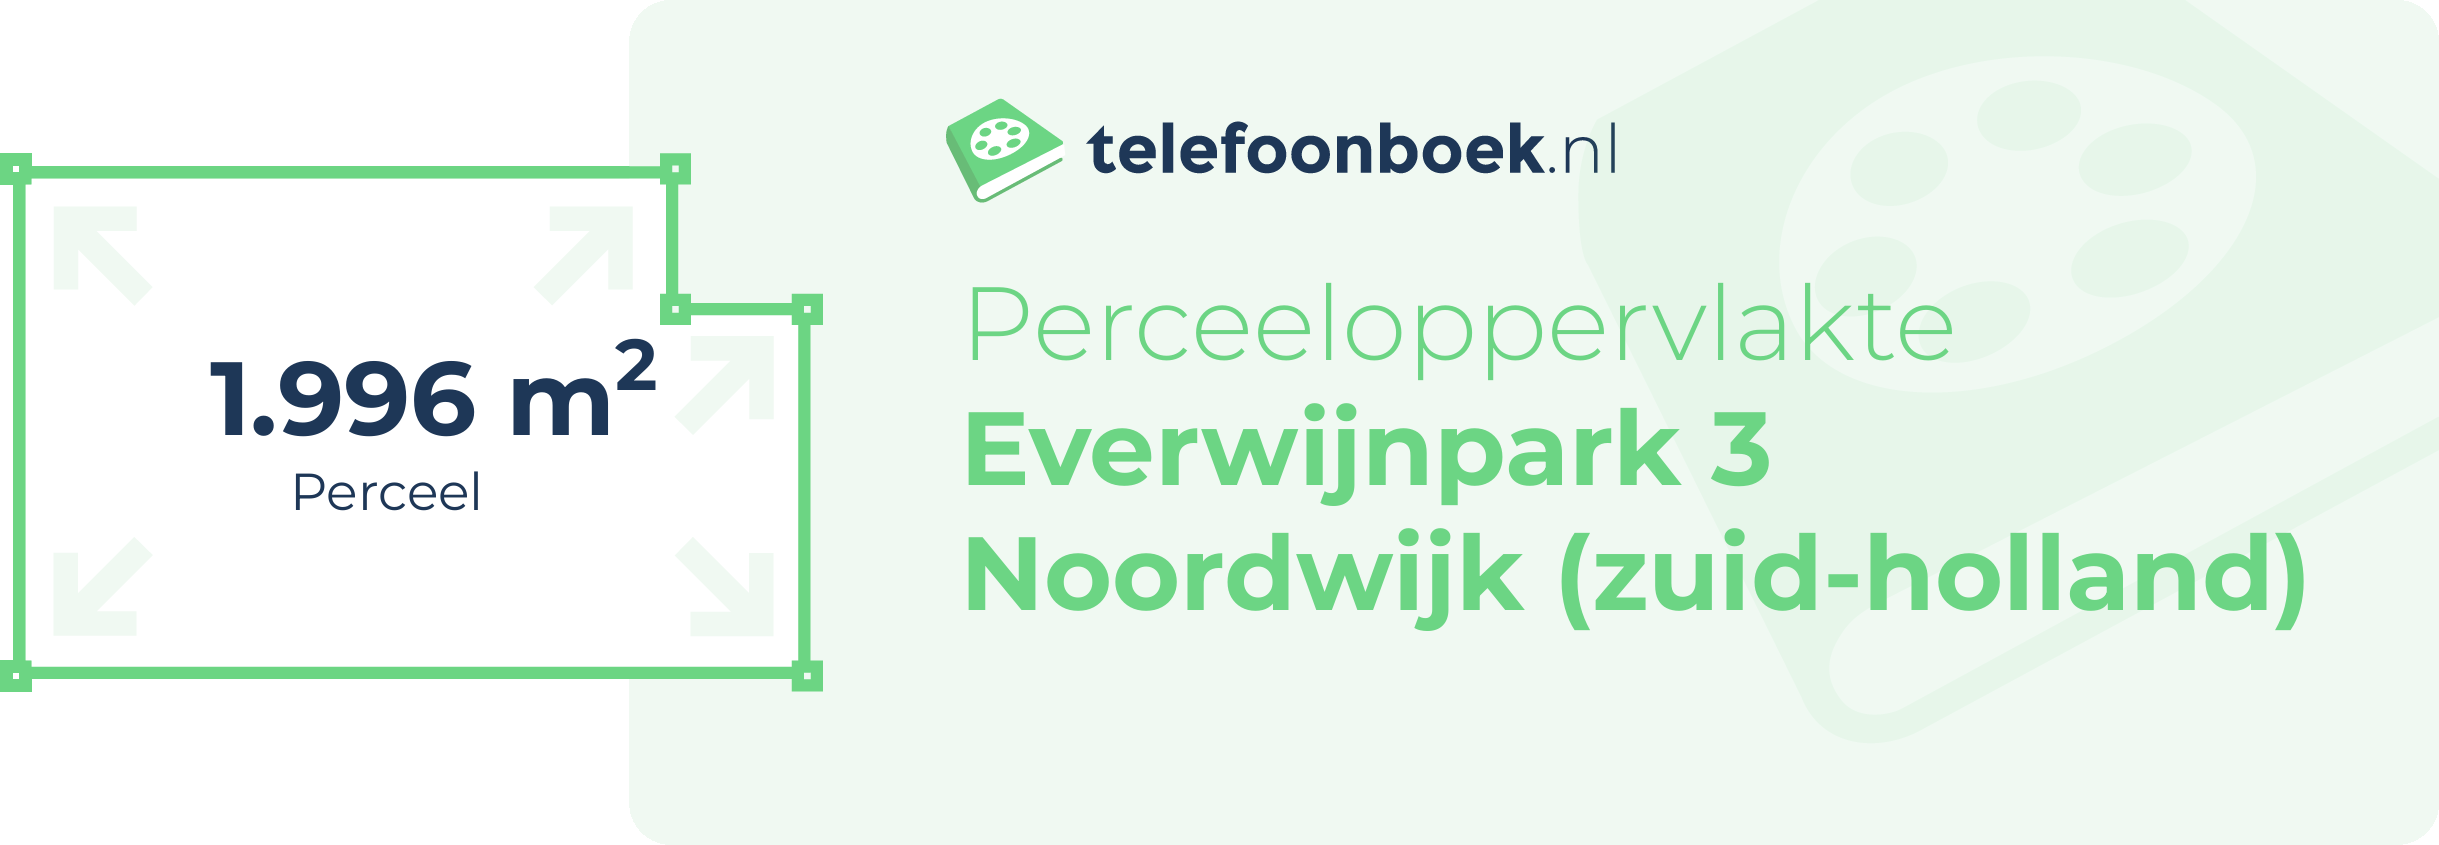 Perceeloppervlakte Everwijnpark 3 Noordwijk (Zuid-Holland)